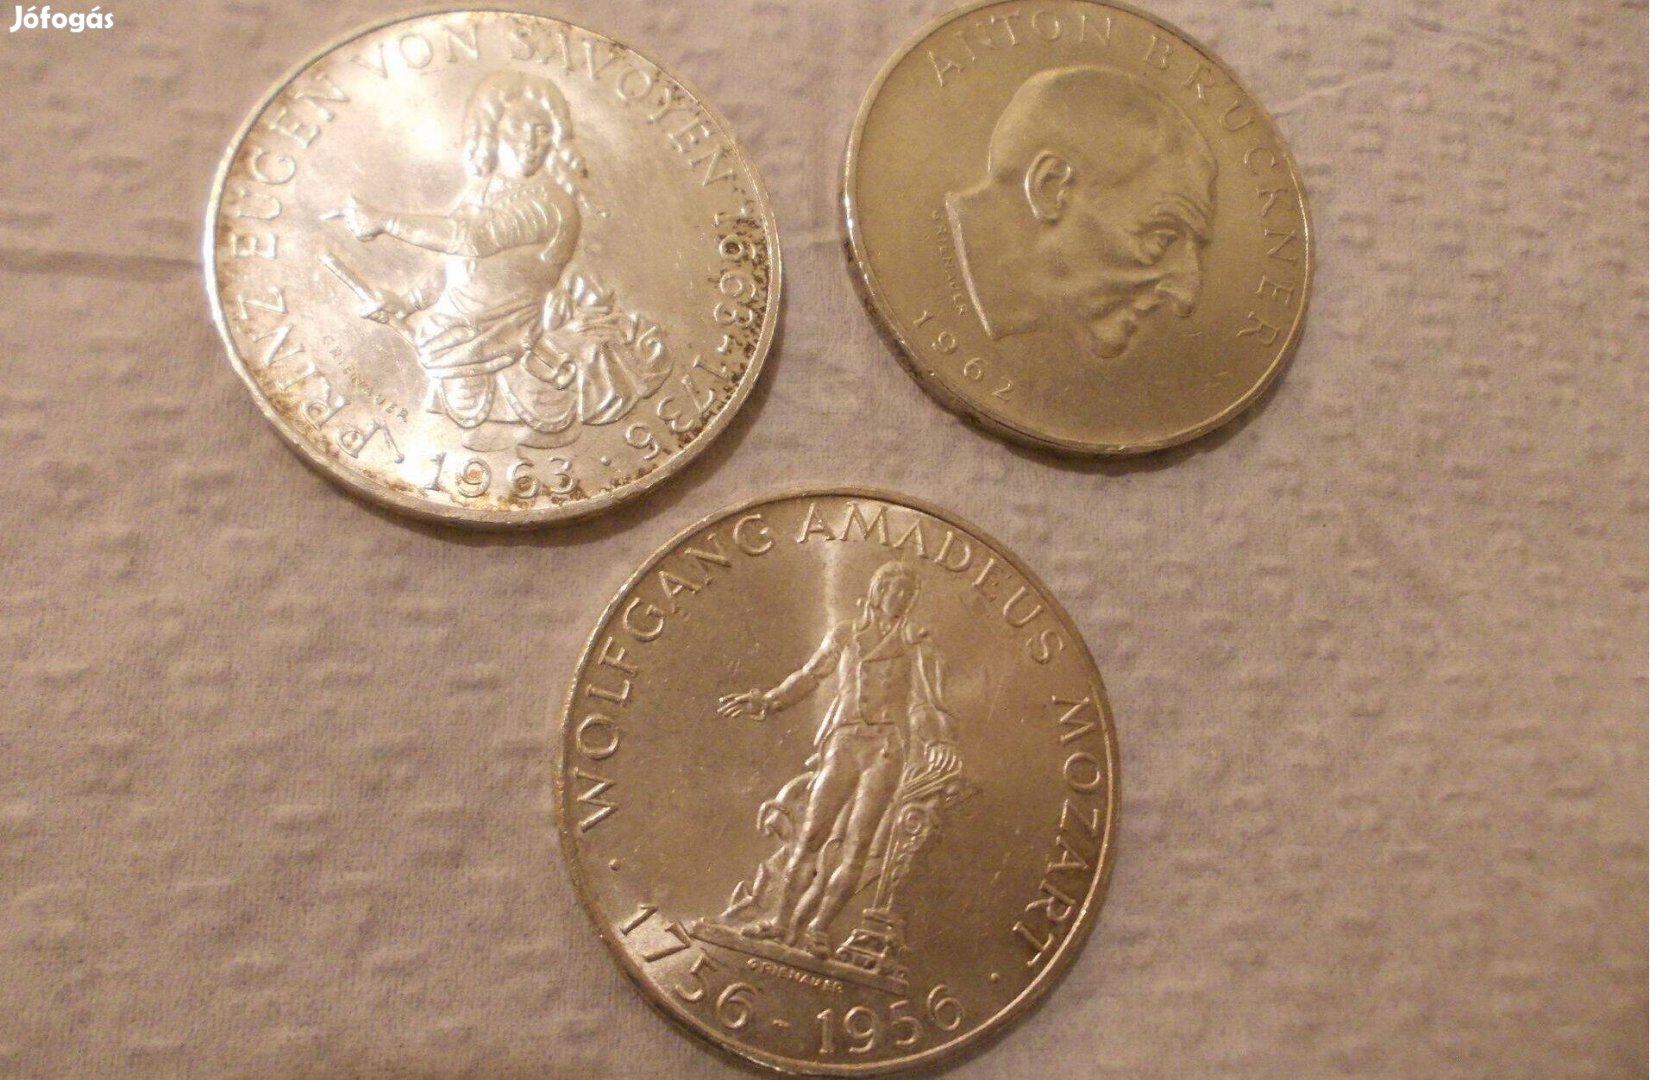 3 db Ausztria 25 schilling egyben, ezüst, 1956, 1962, 1963